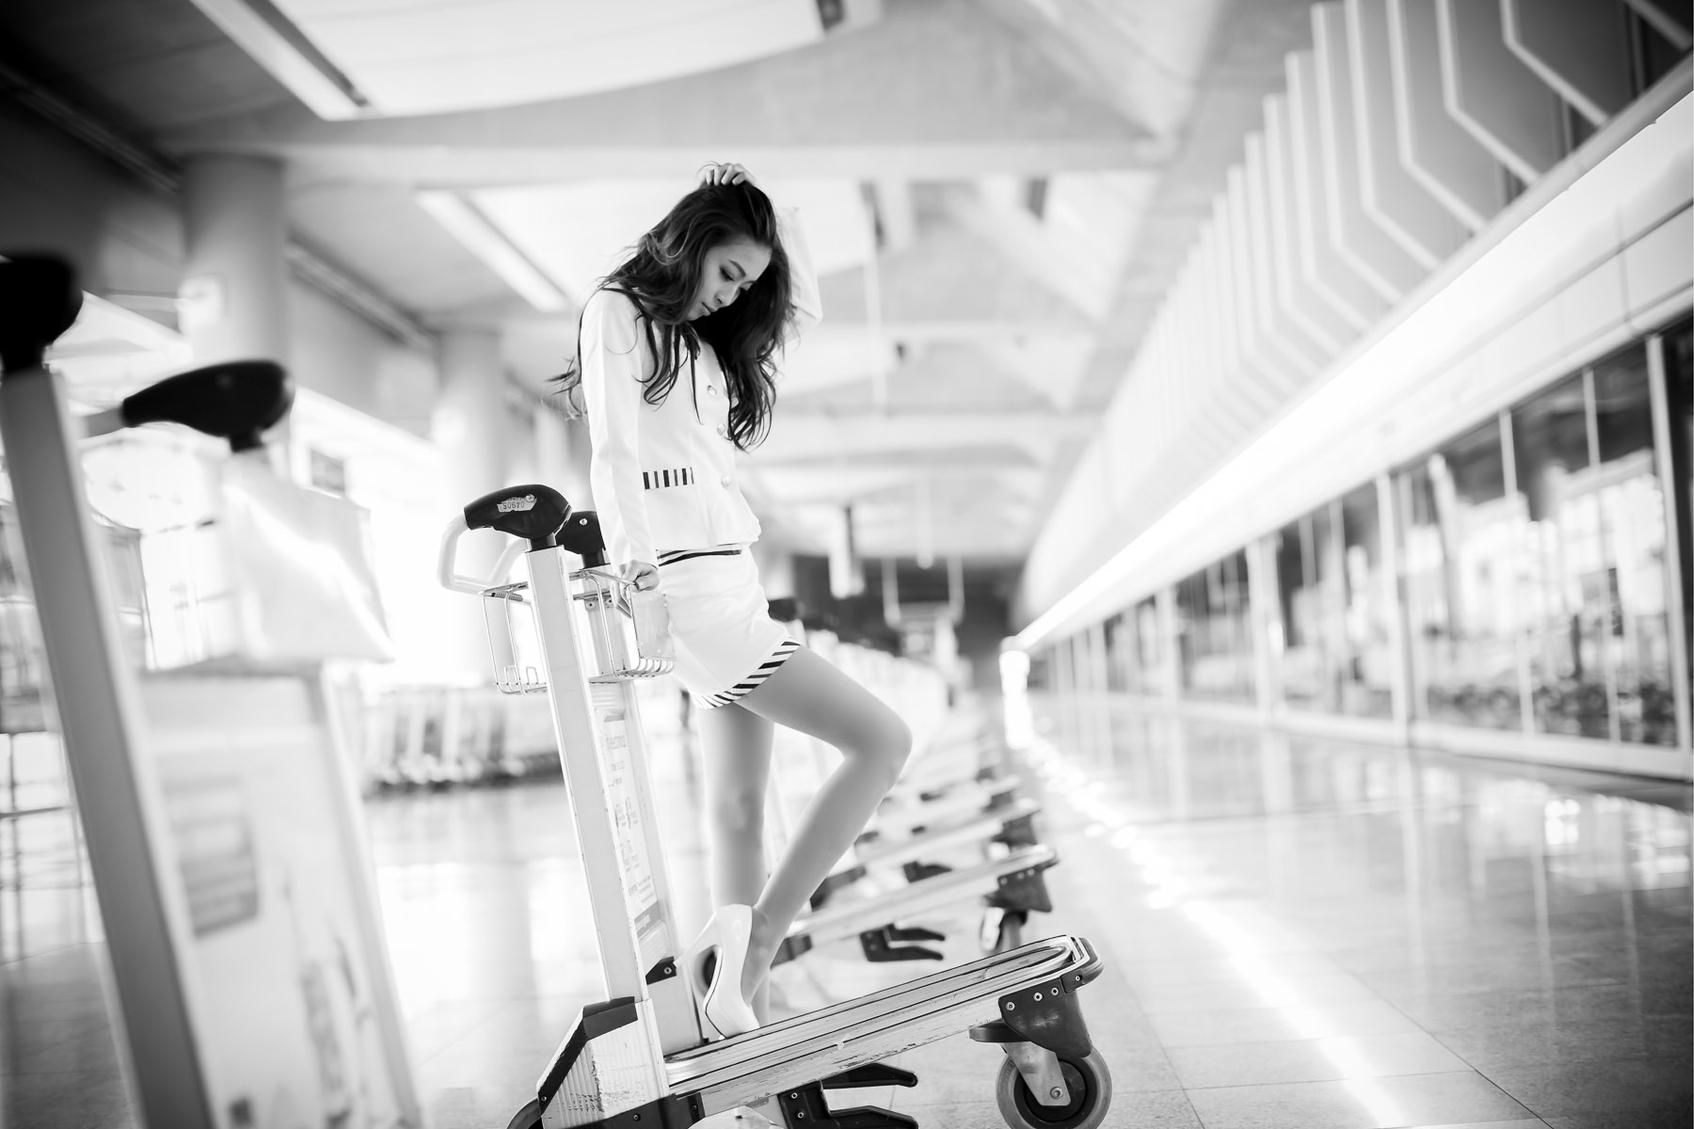 美丽空姐刘思琪 - 香港国际机场摄影写真套图